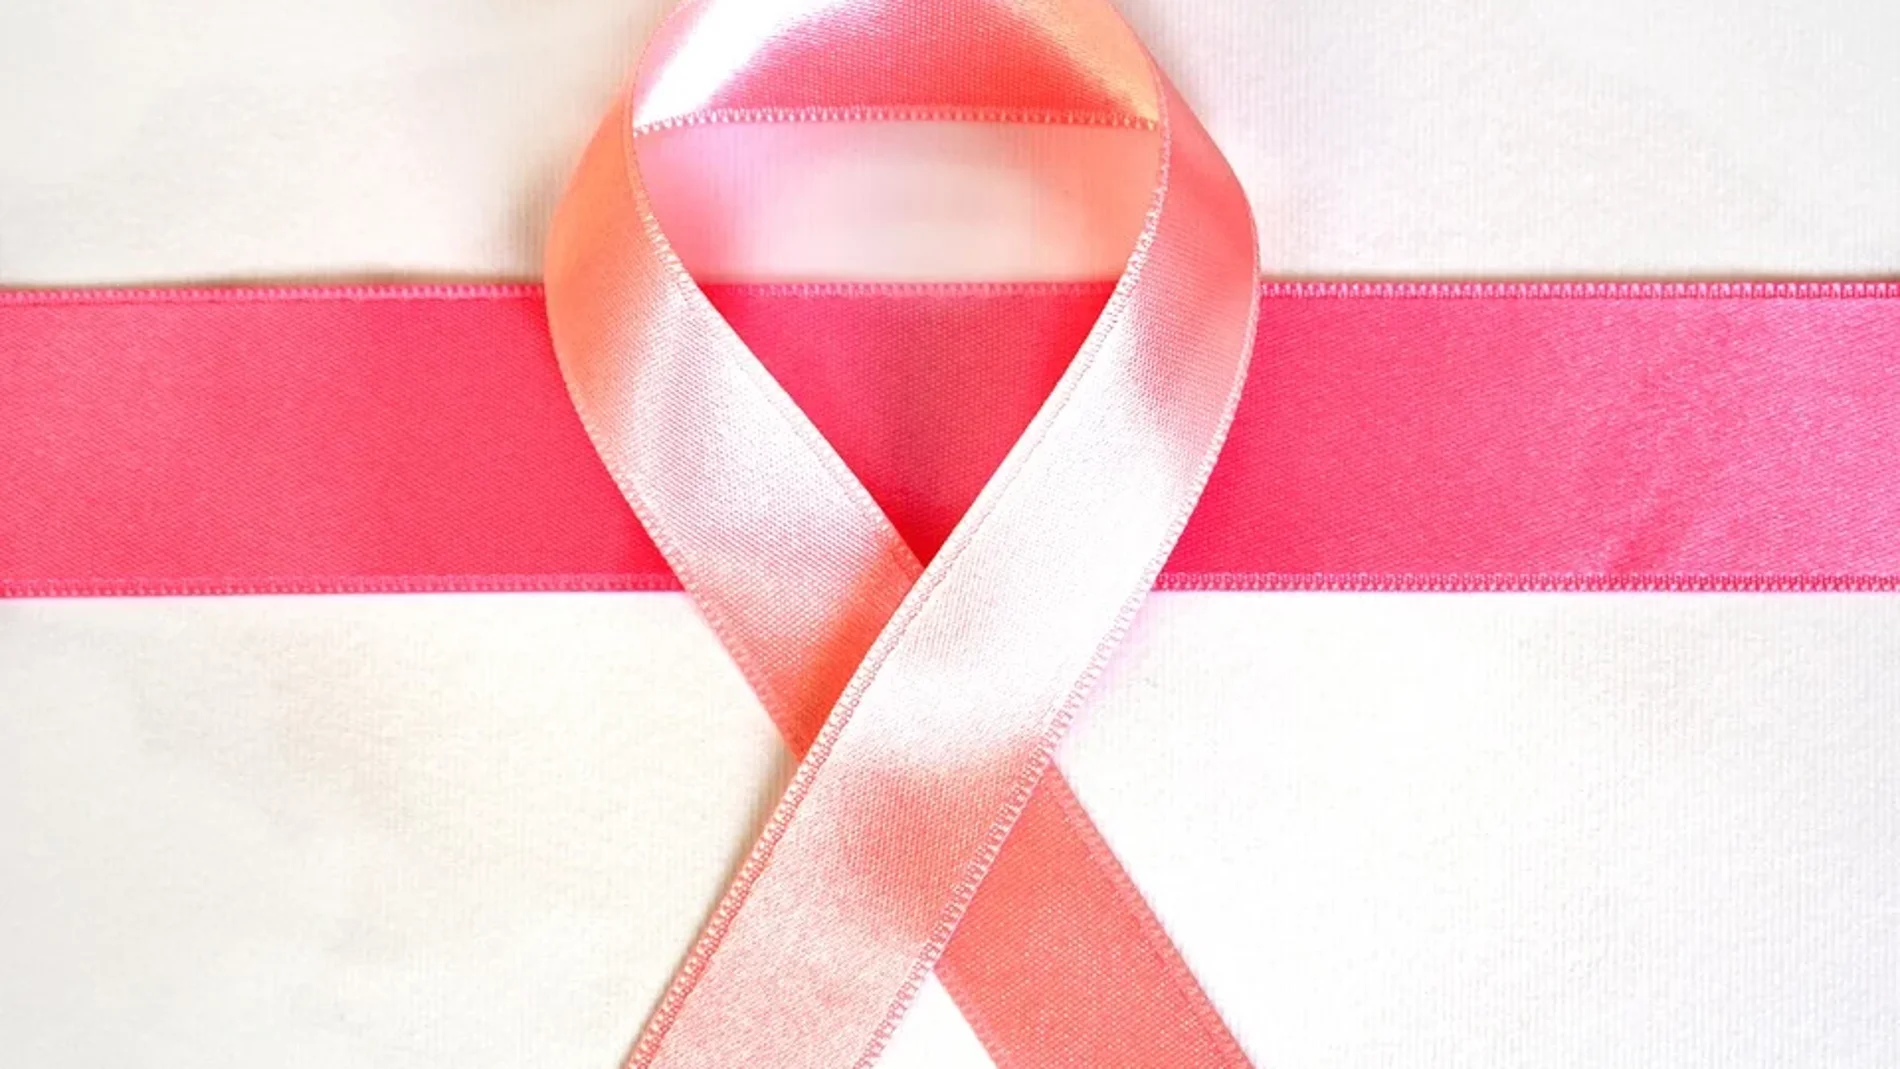 Una de cada ocho de nosotras vamos a padecer un cáncer de mama, pero debemos saber que es uno de los cánceres con mayor supervivencia, tanto por el diagnóstico precoz que nos permiten las pruebas realizadas como por los tratamientos que tenemos para luchar contra esta enfermedad.